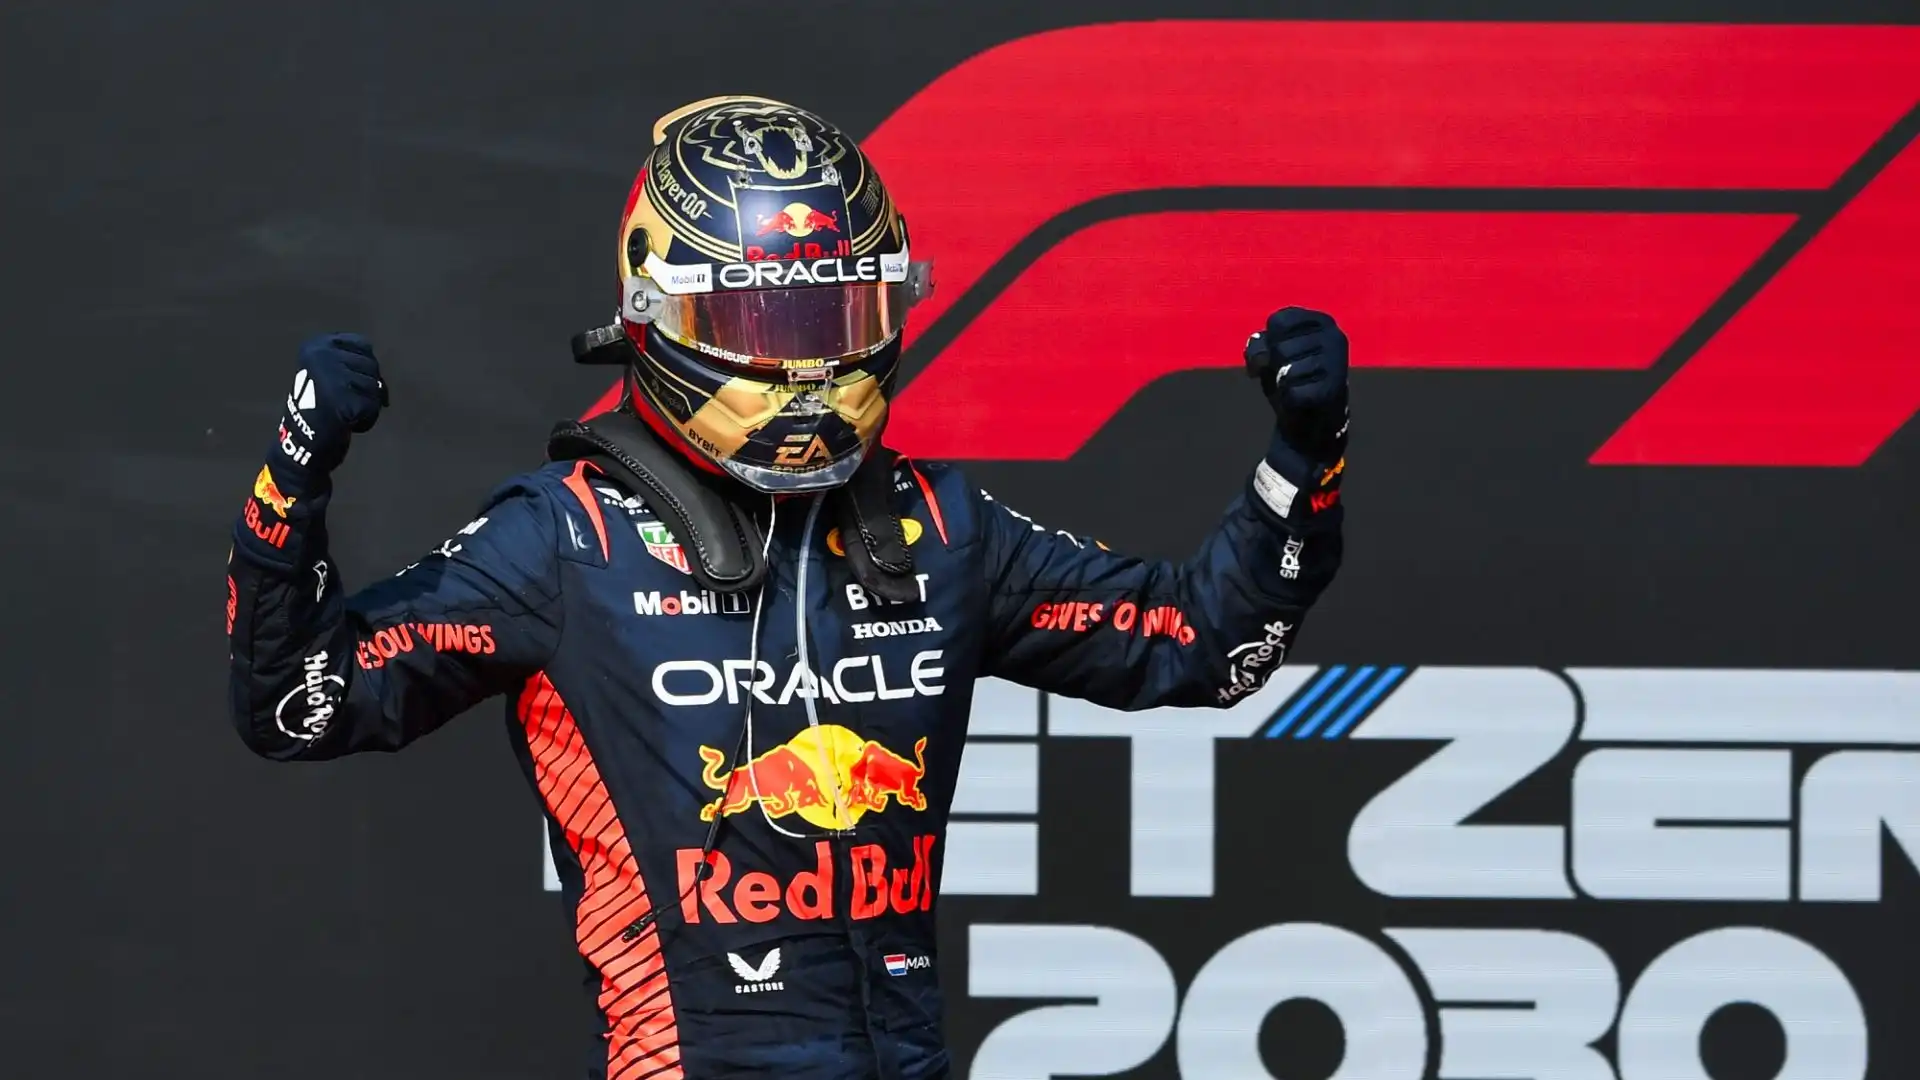 Il pilota della Red Bull sulla pista texana ha vinto il suo quindicesimo Gran Premio in questa stagione